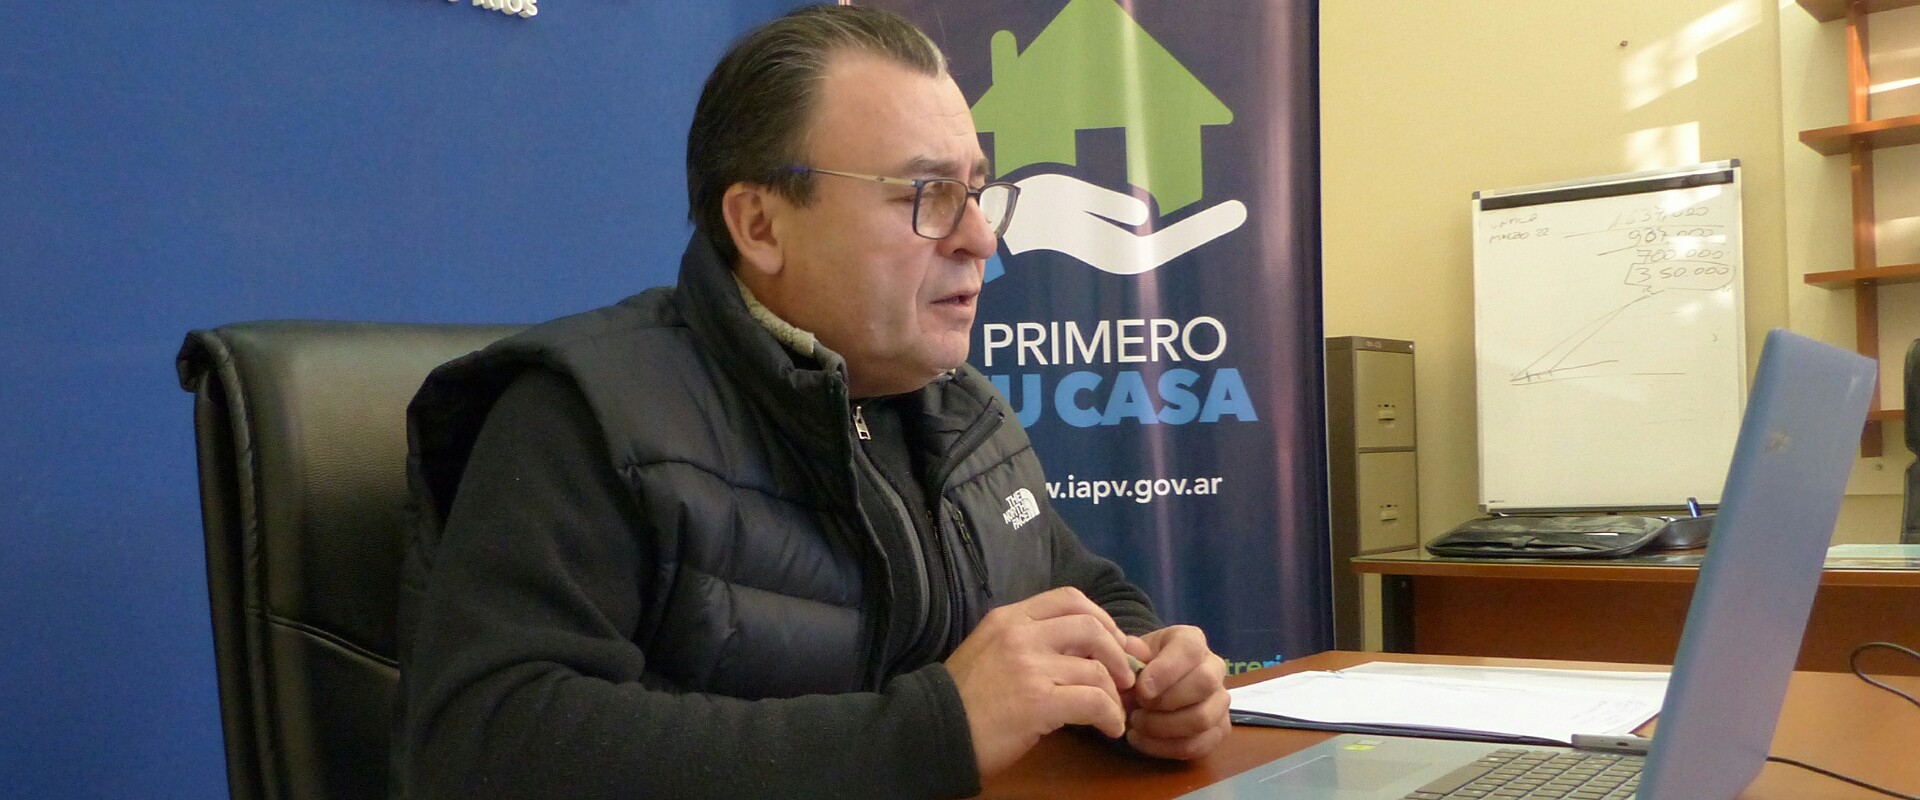 El gobierno trabaja en nuevas soluciones habitacionales para Enrique Carbó